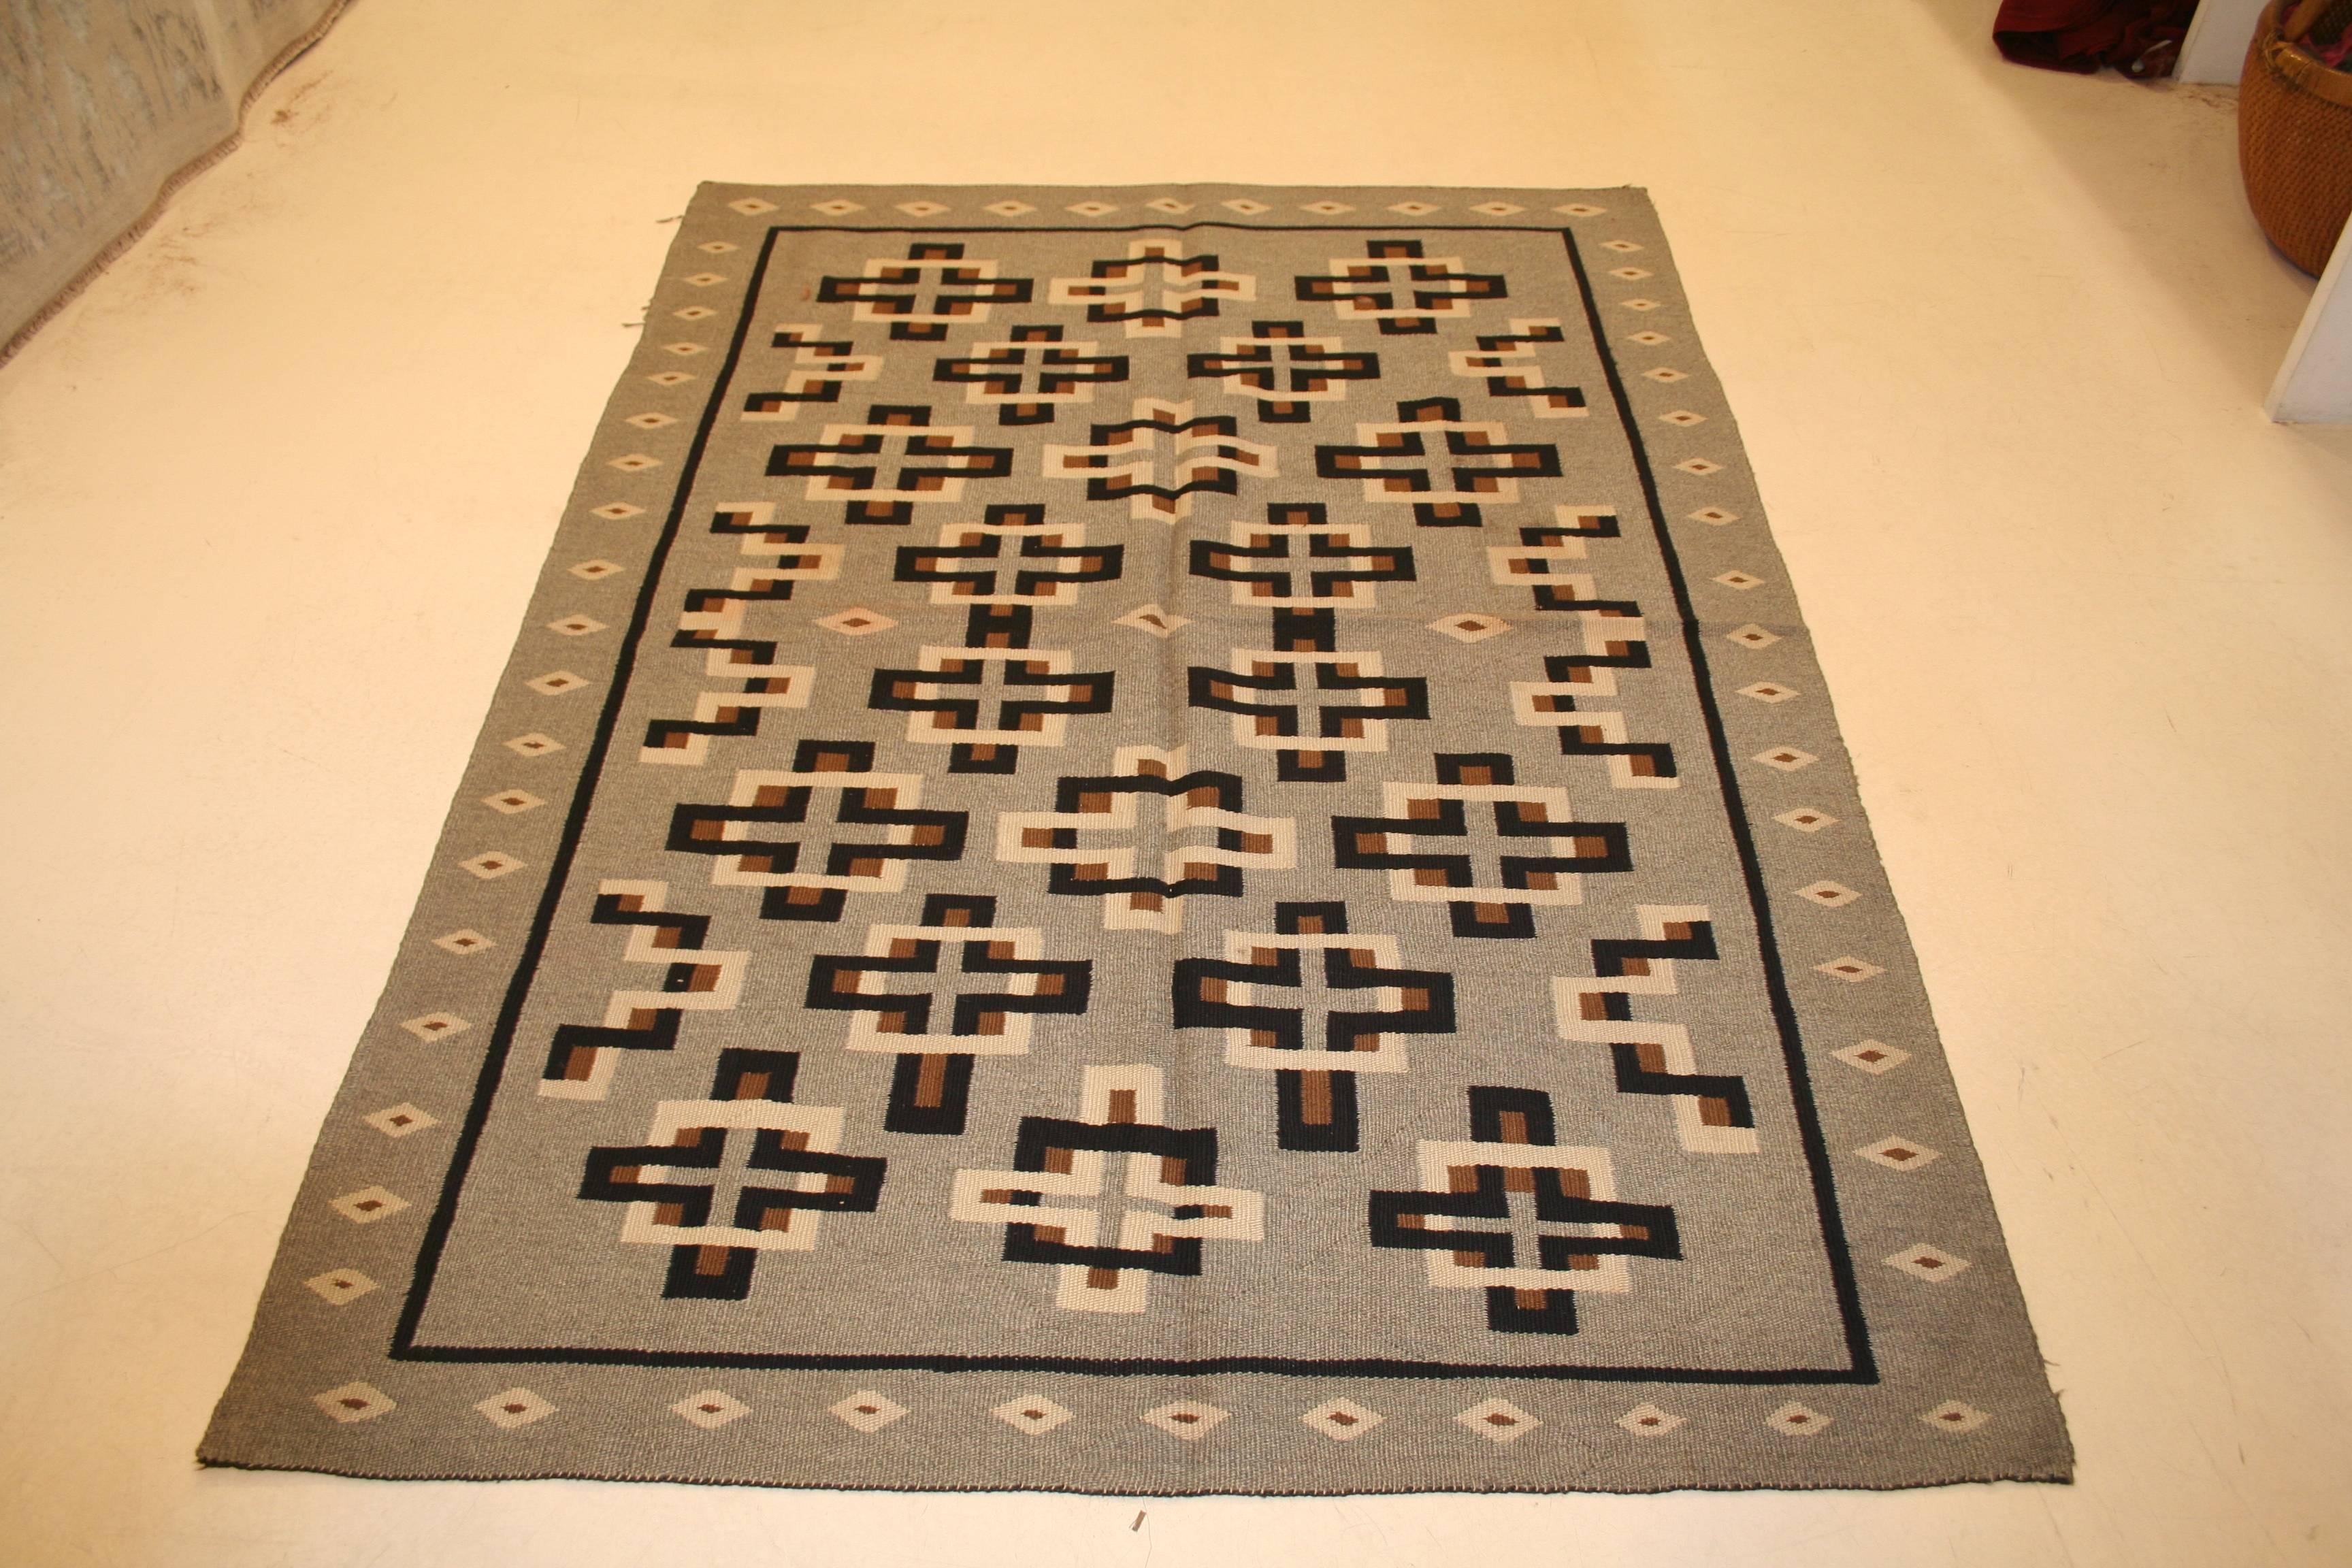 Ein antiker Navajo-Teppich aus dem Südwesten Amerikas, der sich durch ein Allover-Muster aus kreuzförmigen Elementen auf einem weichen grauen Hintergrund auszeichnet. Diese Teppiche werden wegen ihres authentischen volkstümlichen Charakters